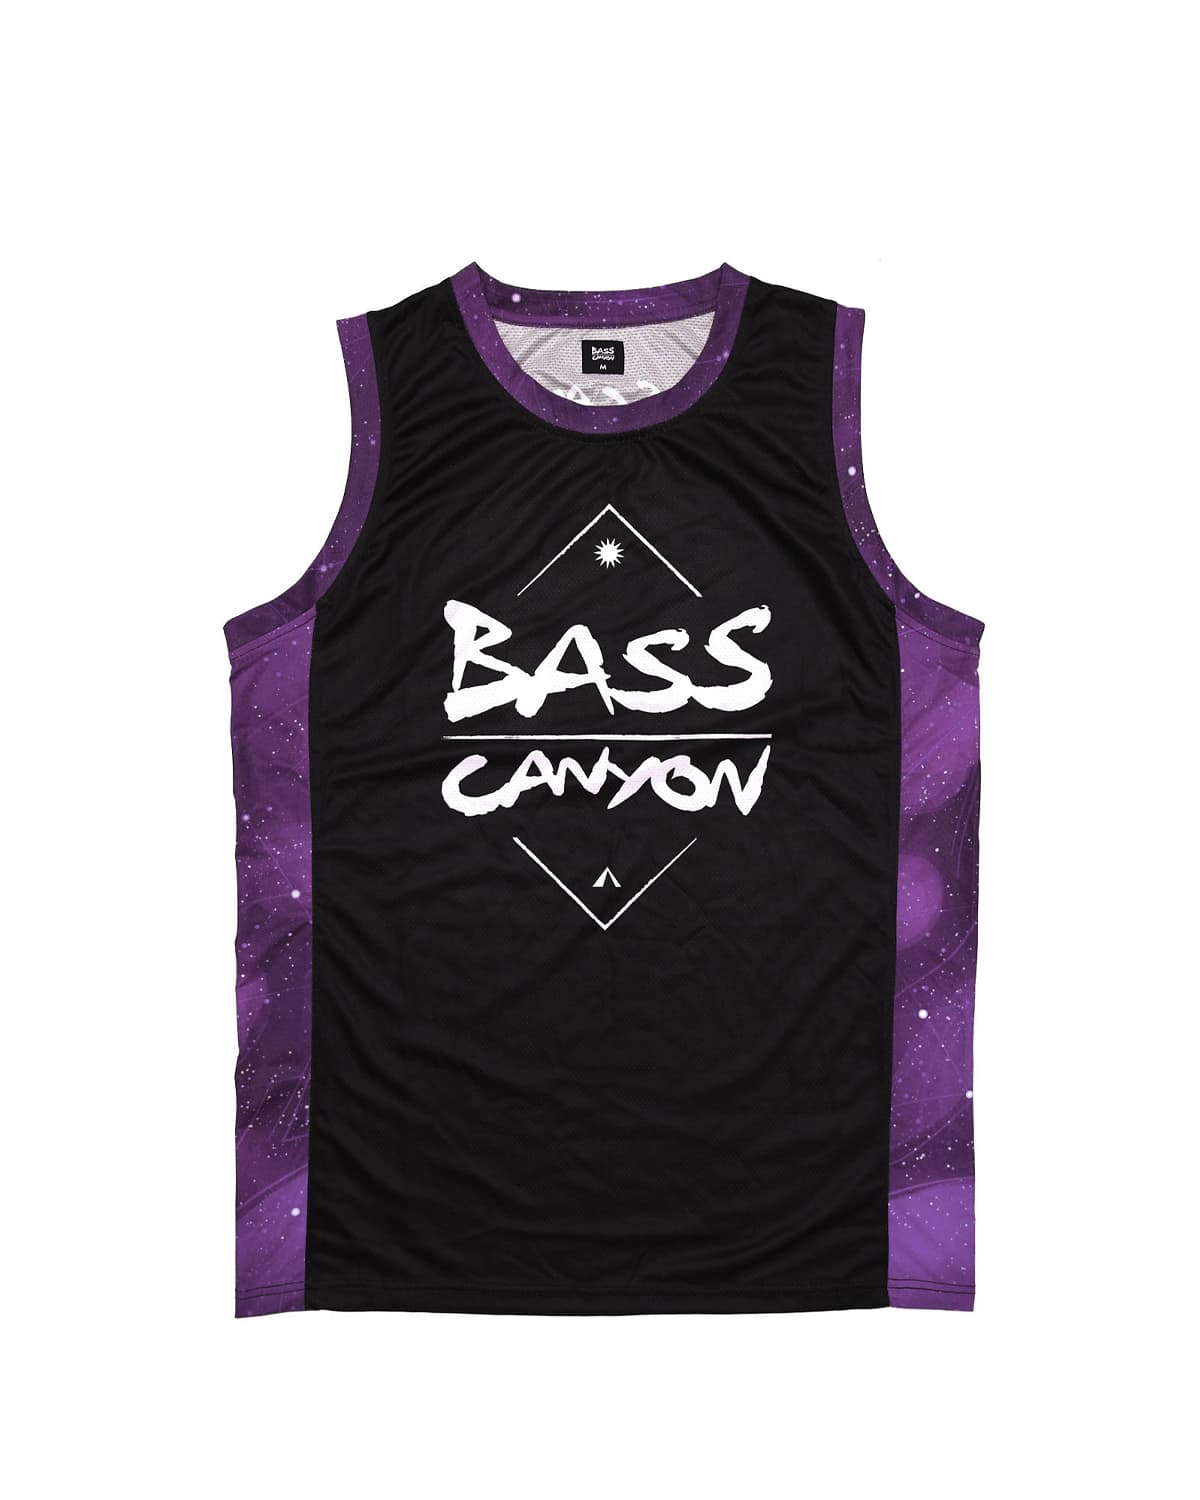 Bass Canyon' Basketball Jersey 